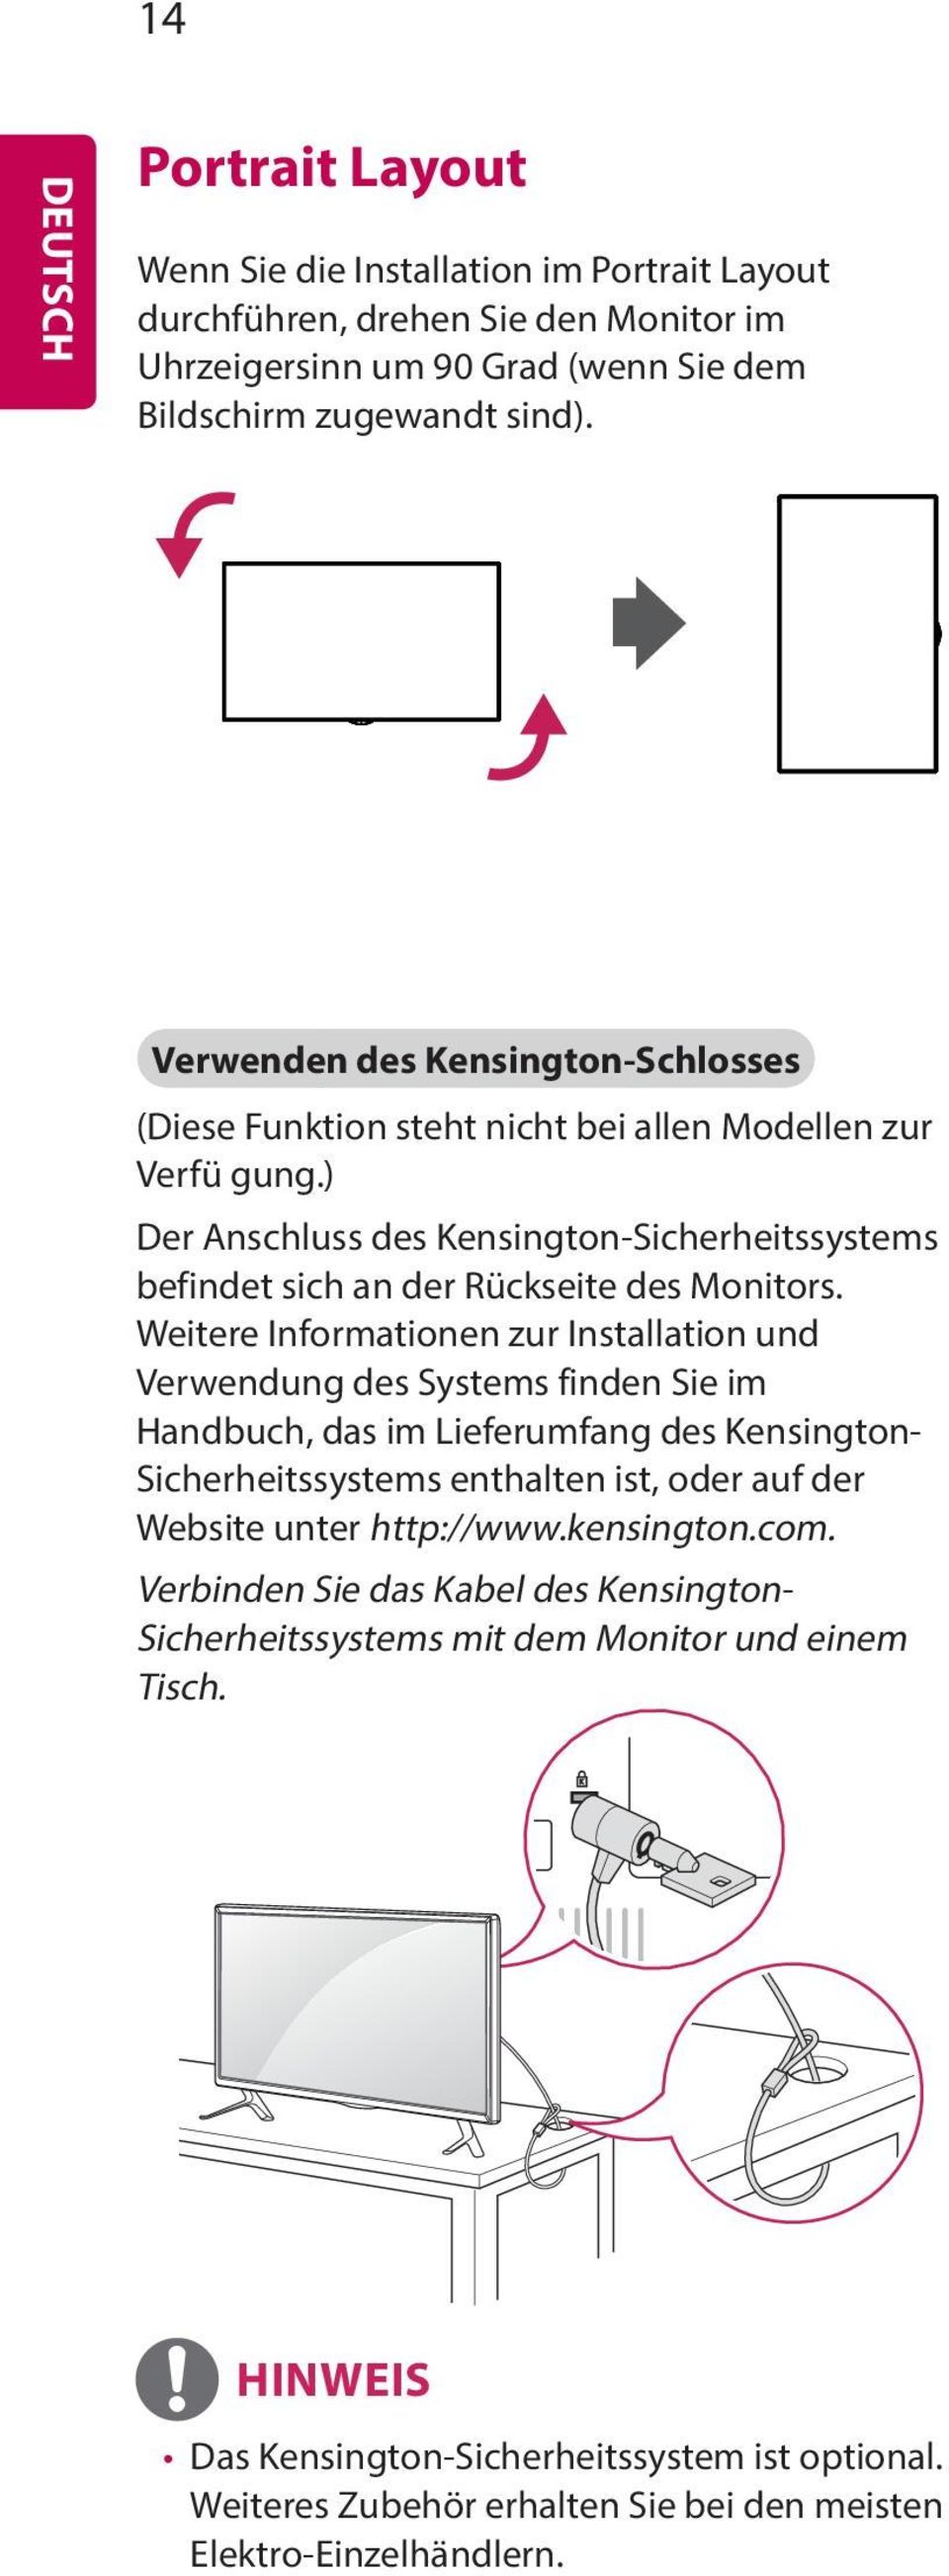 Weitere Informationen zur Installation und Verwendung des Systems finden Sie im Handbuch, das im Lieferumfang des Kensington- Sicherheitssystems enthalten ist, oder auf der Website unter http://www.